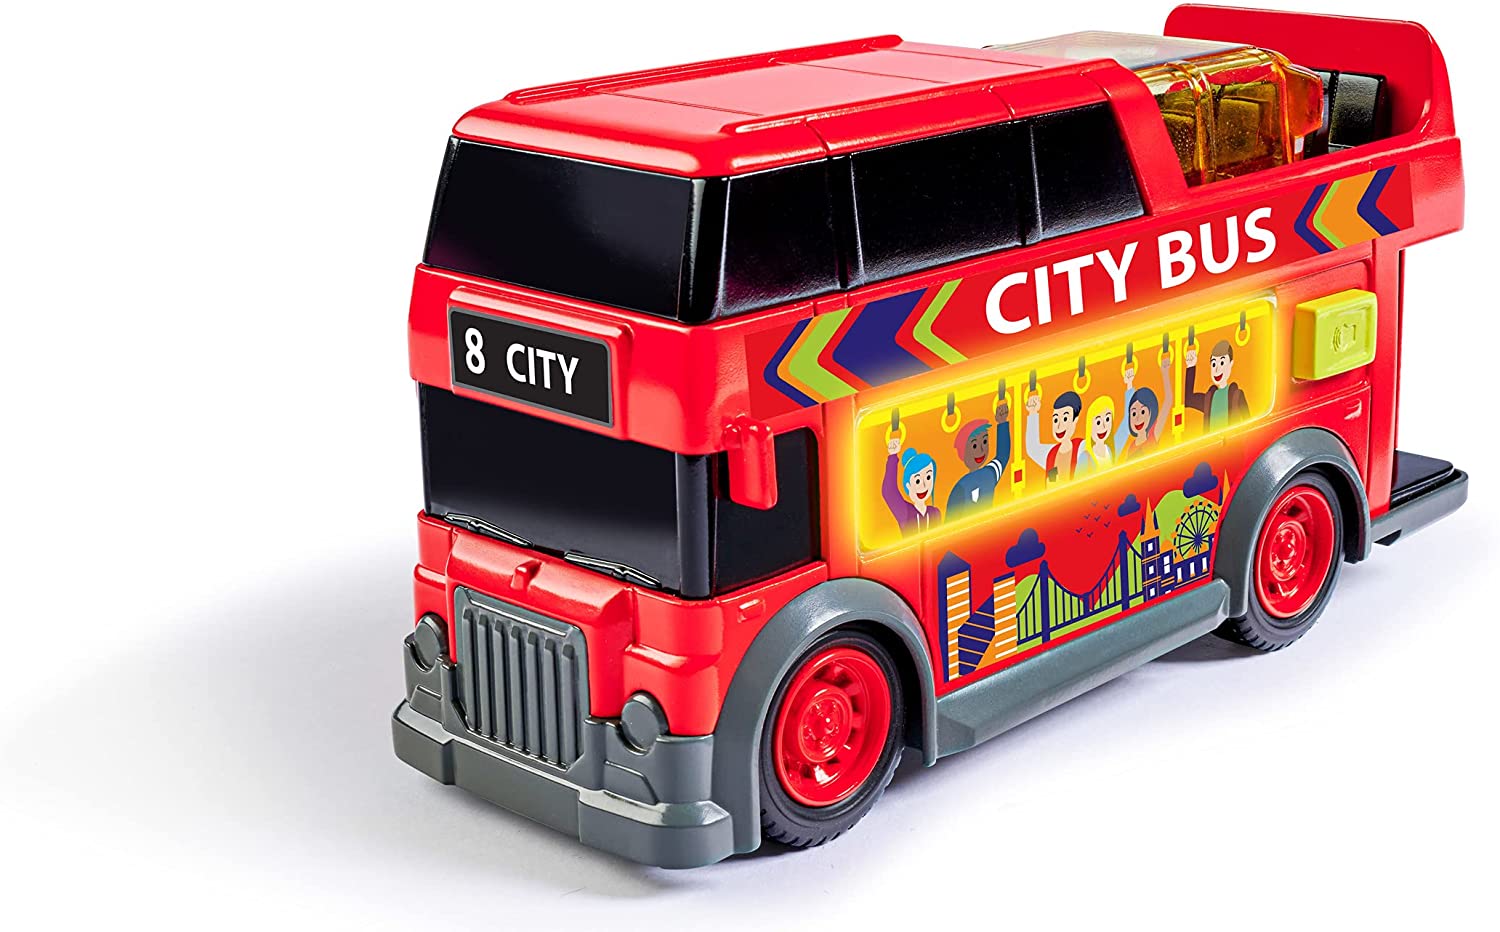 Masina - City Bus, 15 cm | Dickie Toys